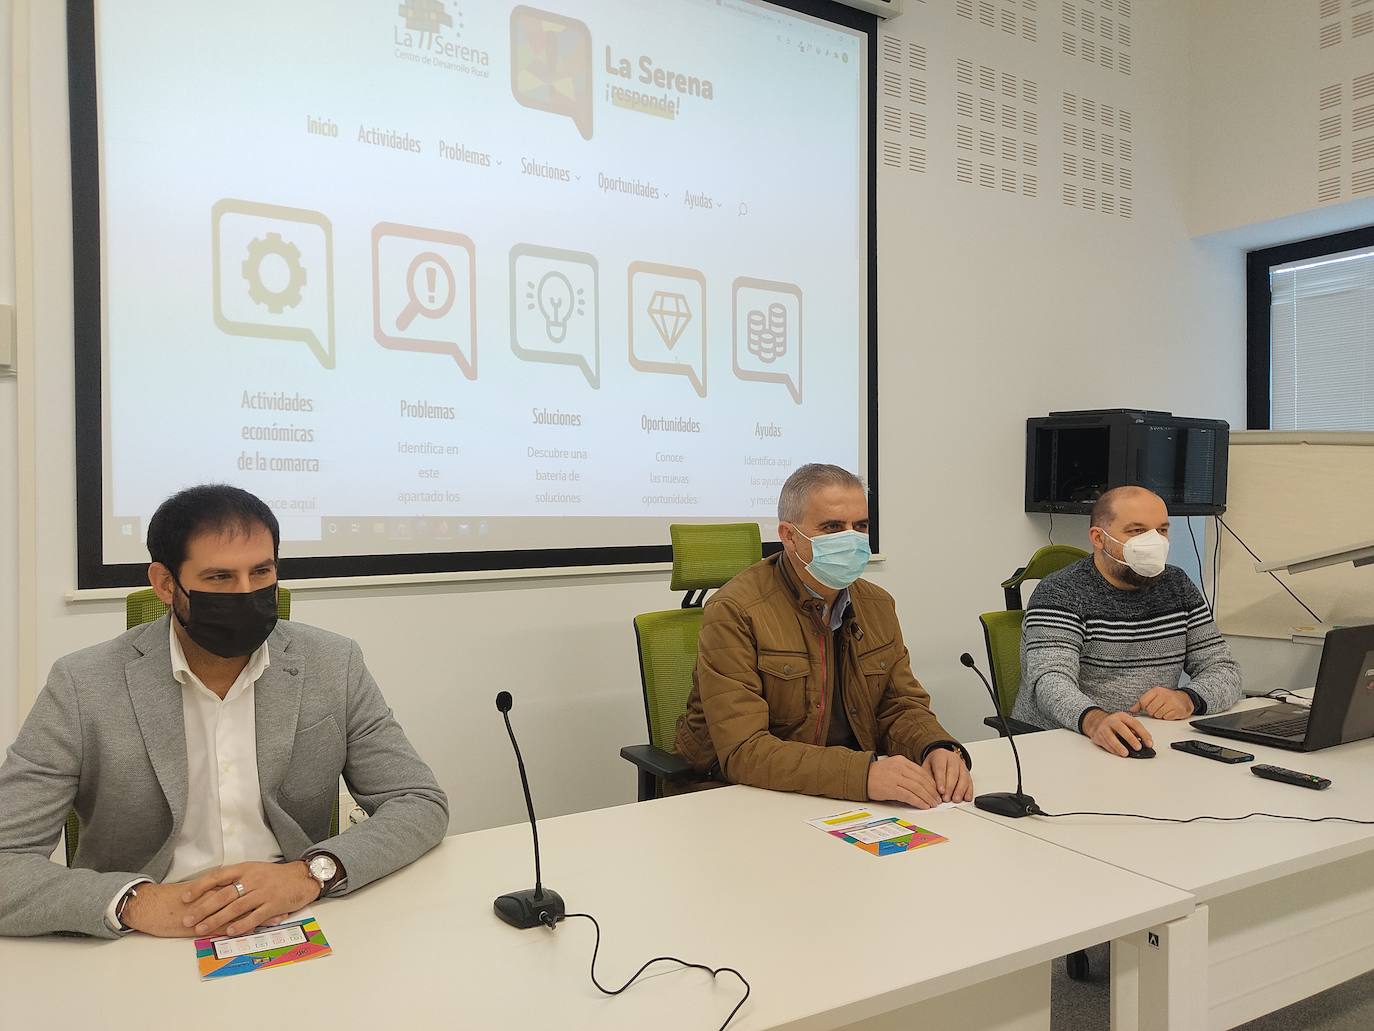 Presentan 'La Serena Responde', una herramienta para relanzar la economía de la comarca